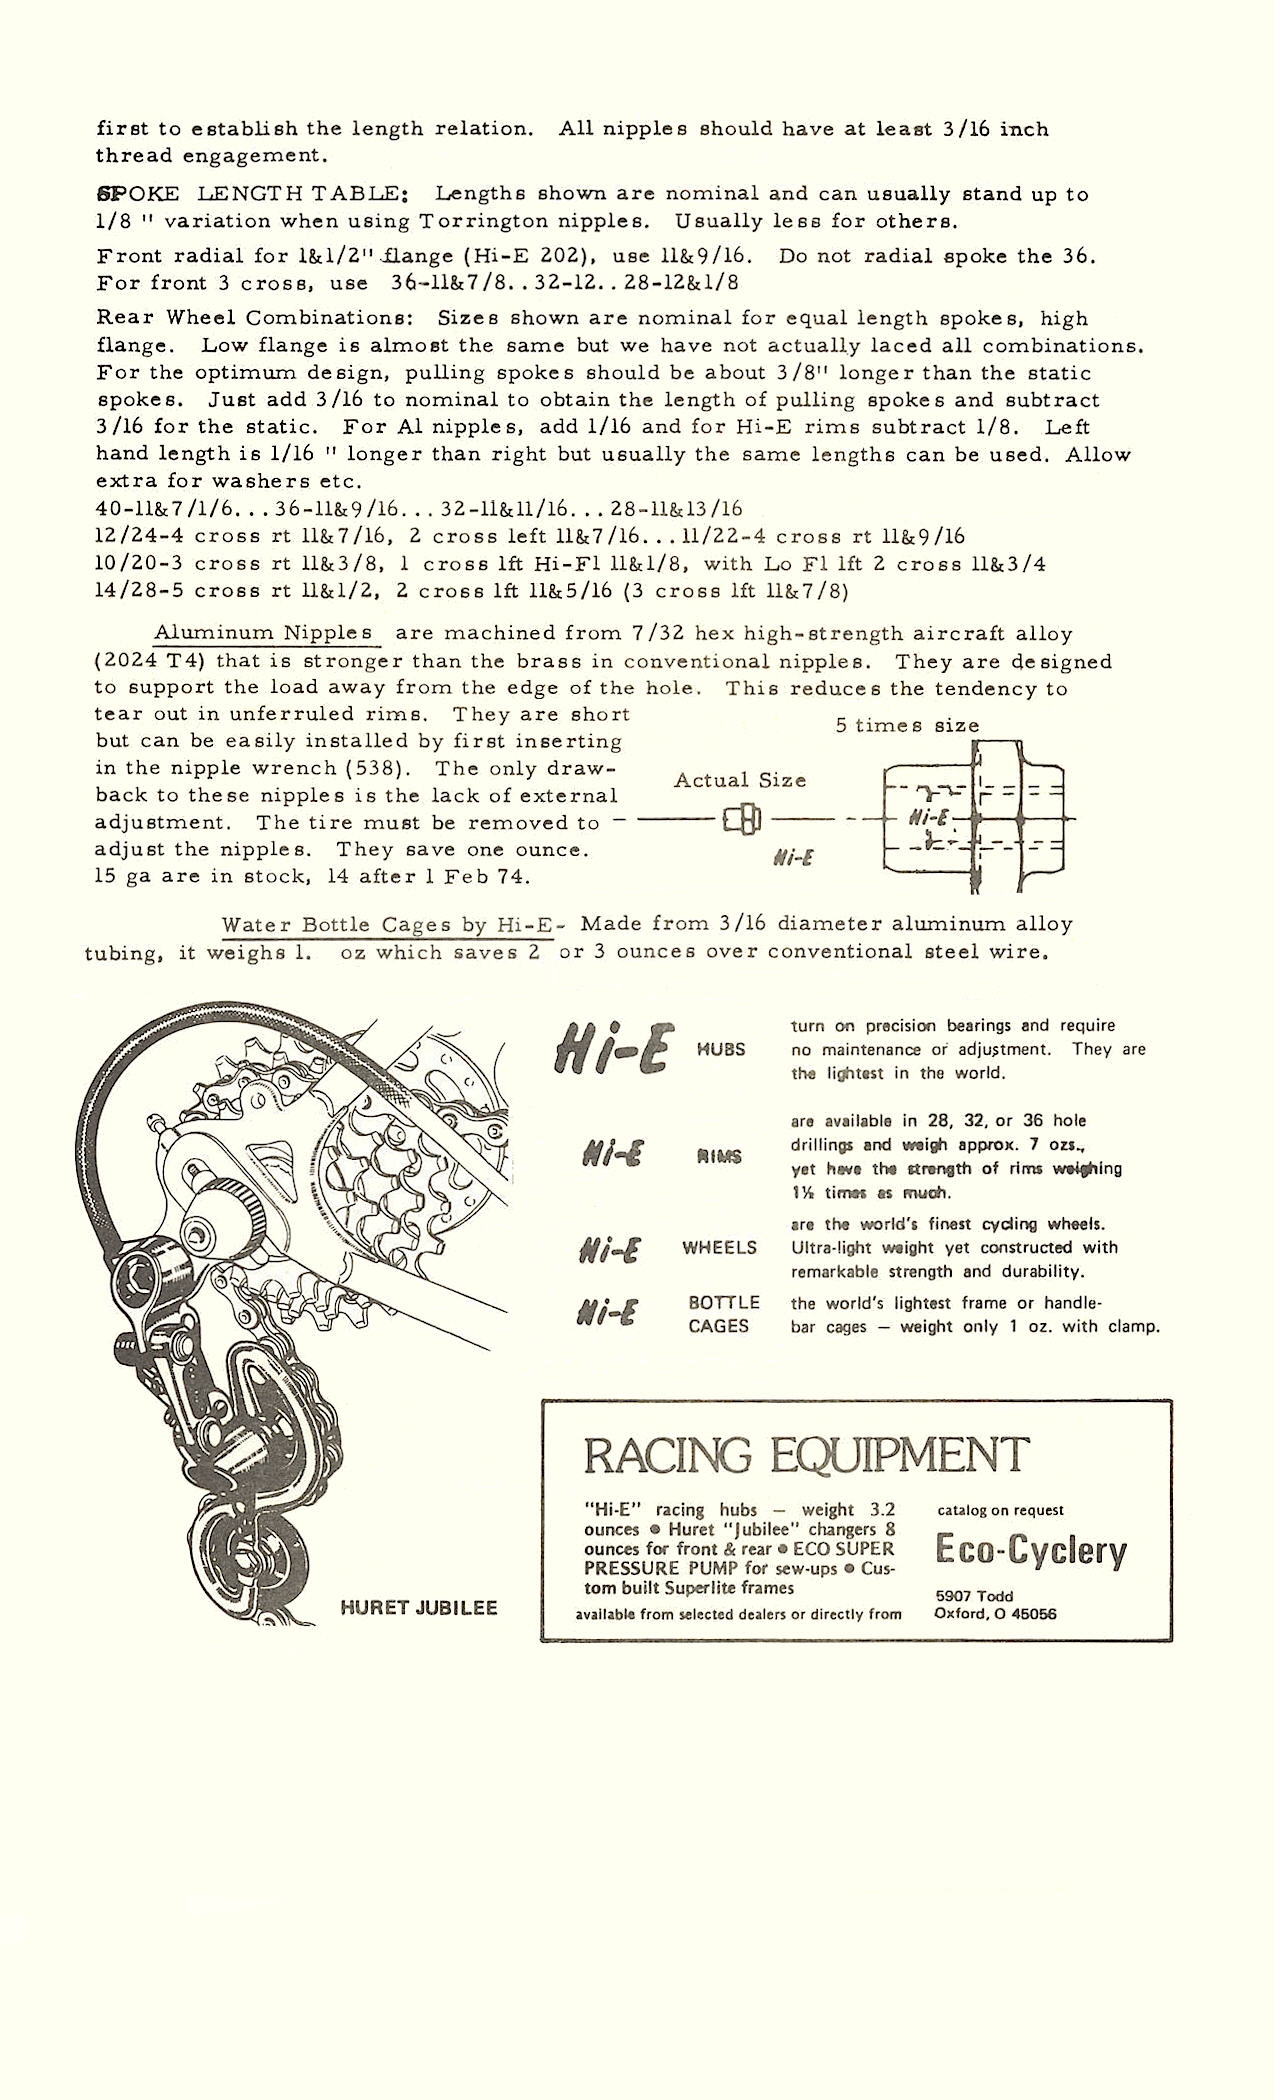 Hi-E parts list / price list (11-1973)